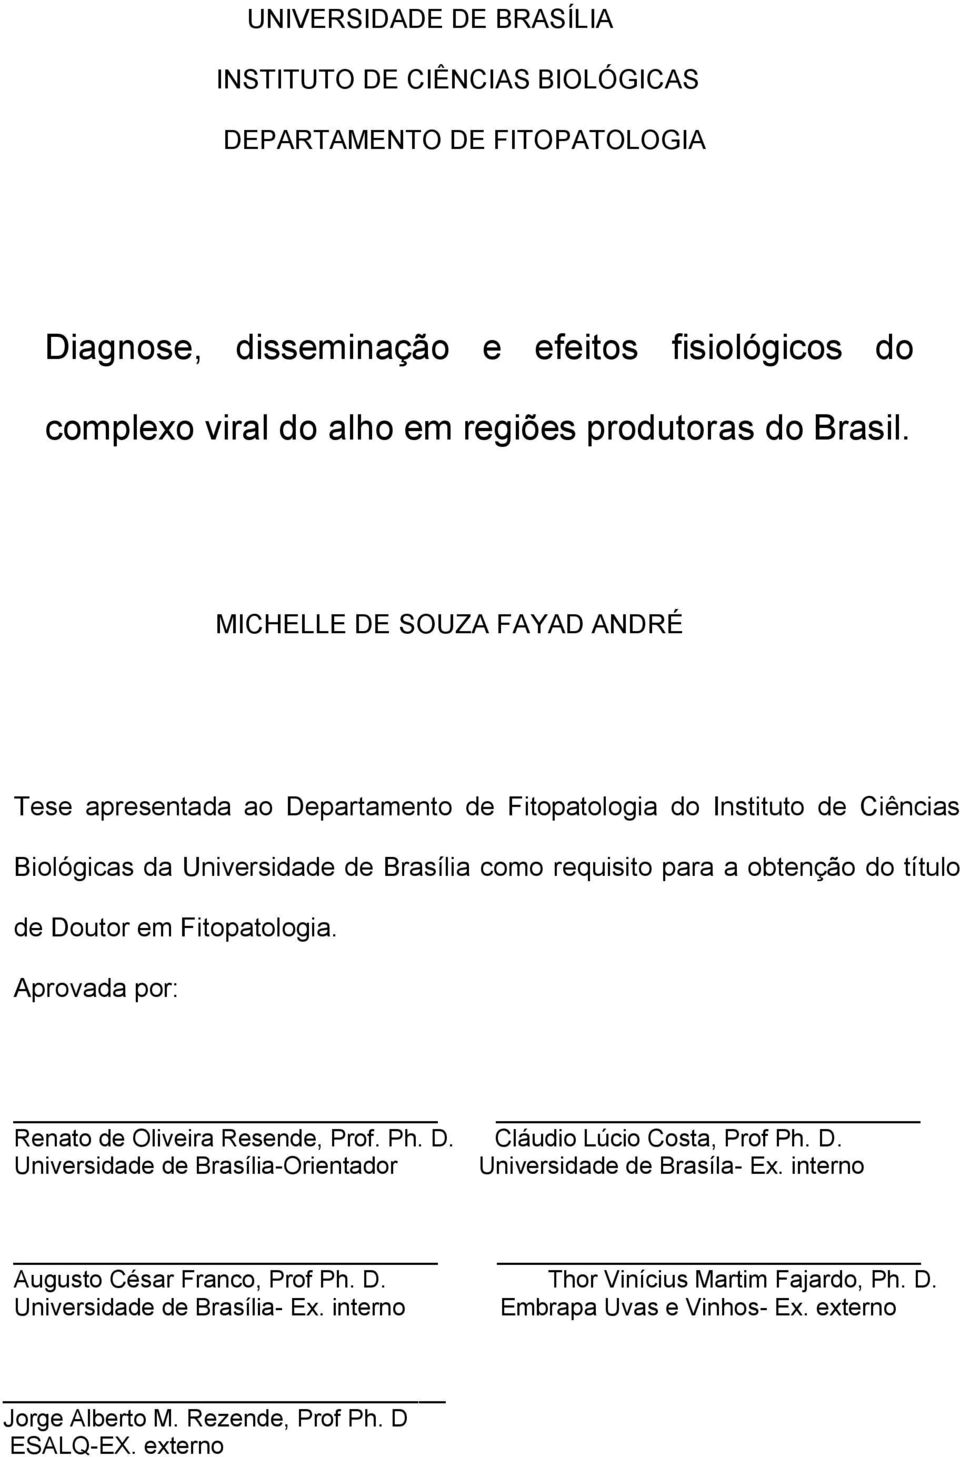 Doutor em Fitopatologia. Aprovada por: Renato de Oliveira Resende, Prof. Ph. D. Cláudio Lúcio Costa, Prof Ph. D. Universidade de Brasília-Orientador Universidade de Brasíla- Ex.